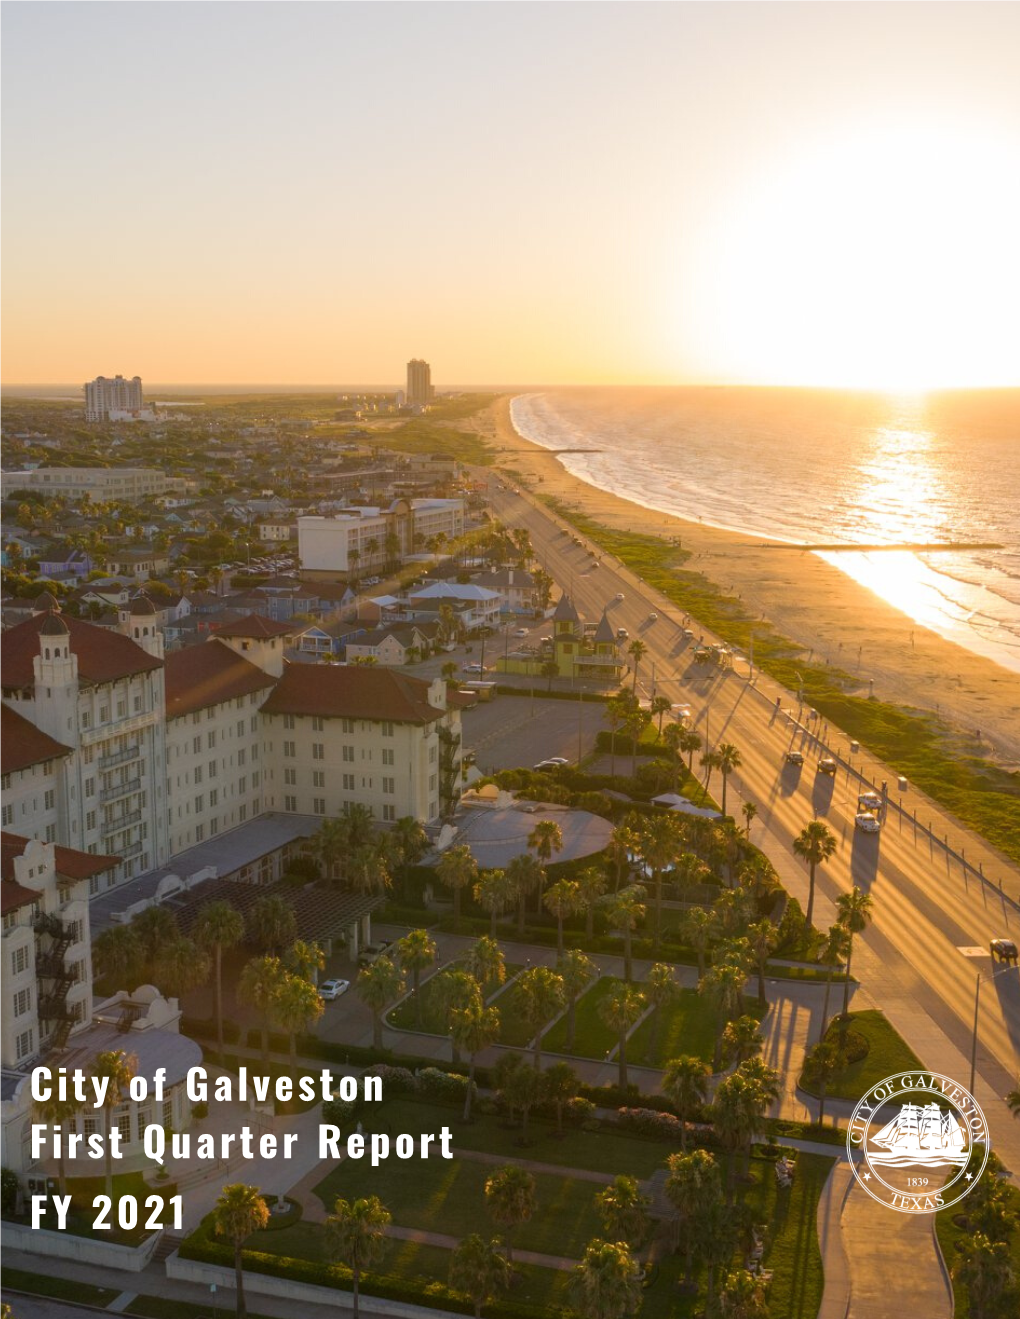 City of Galveston First Quarter Report FY 2021